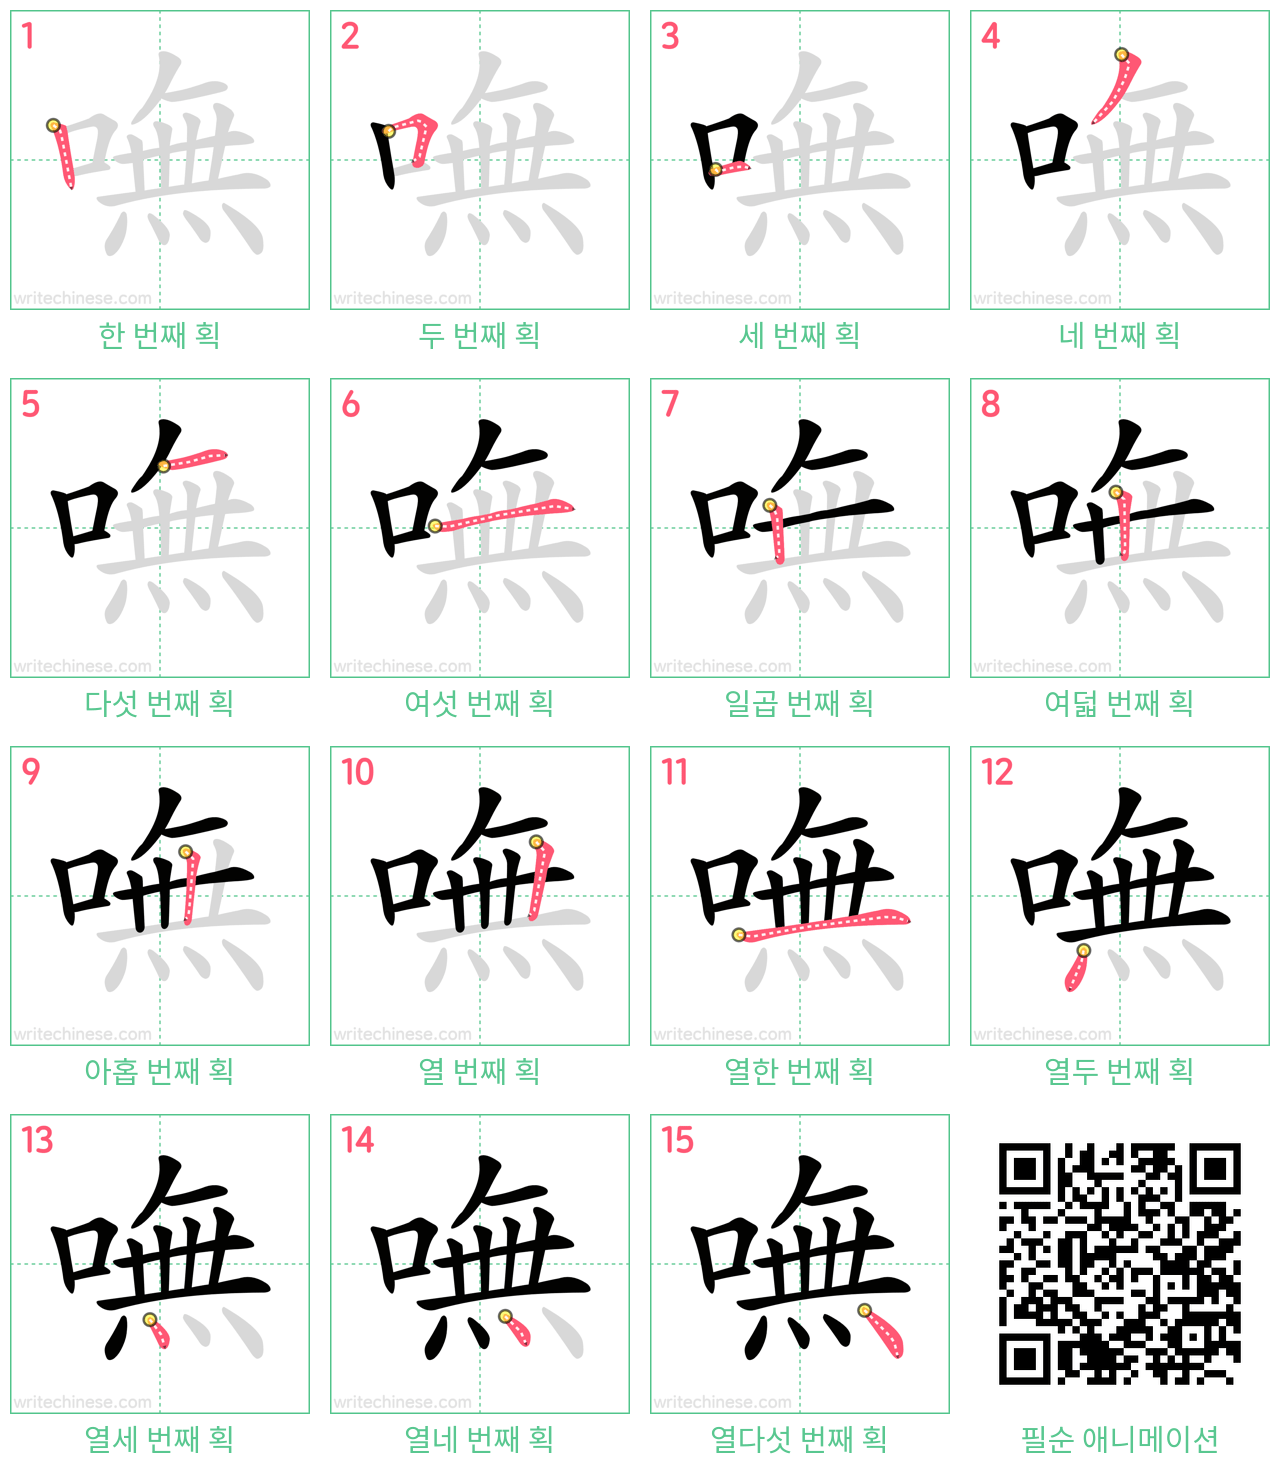 嘸 step-by-step stroke order diagrams